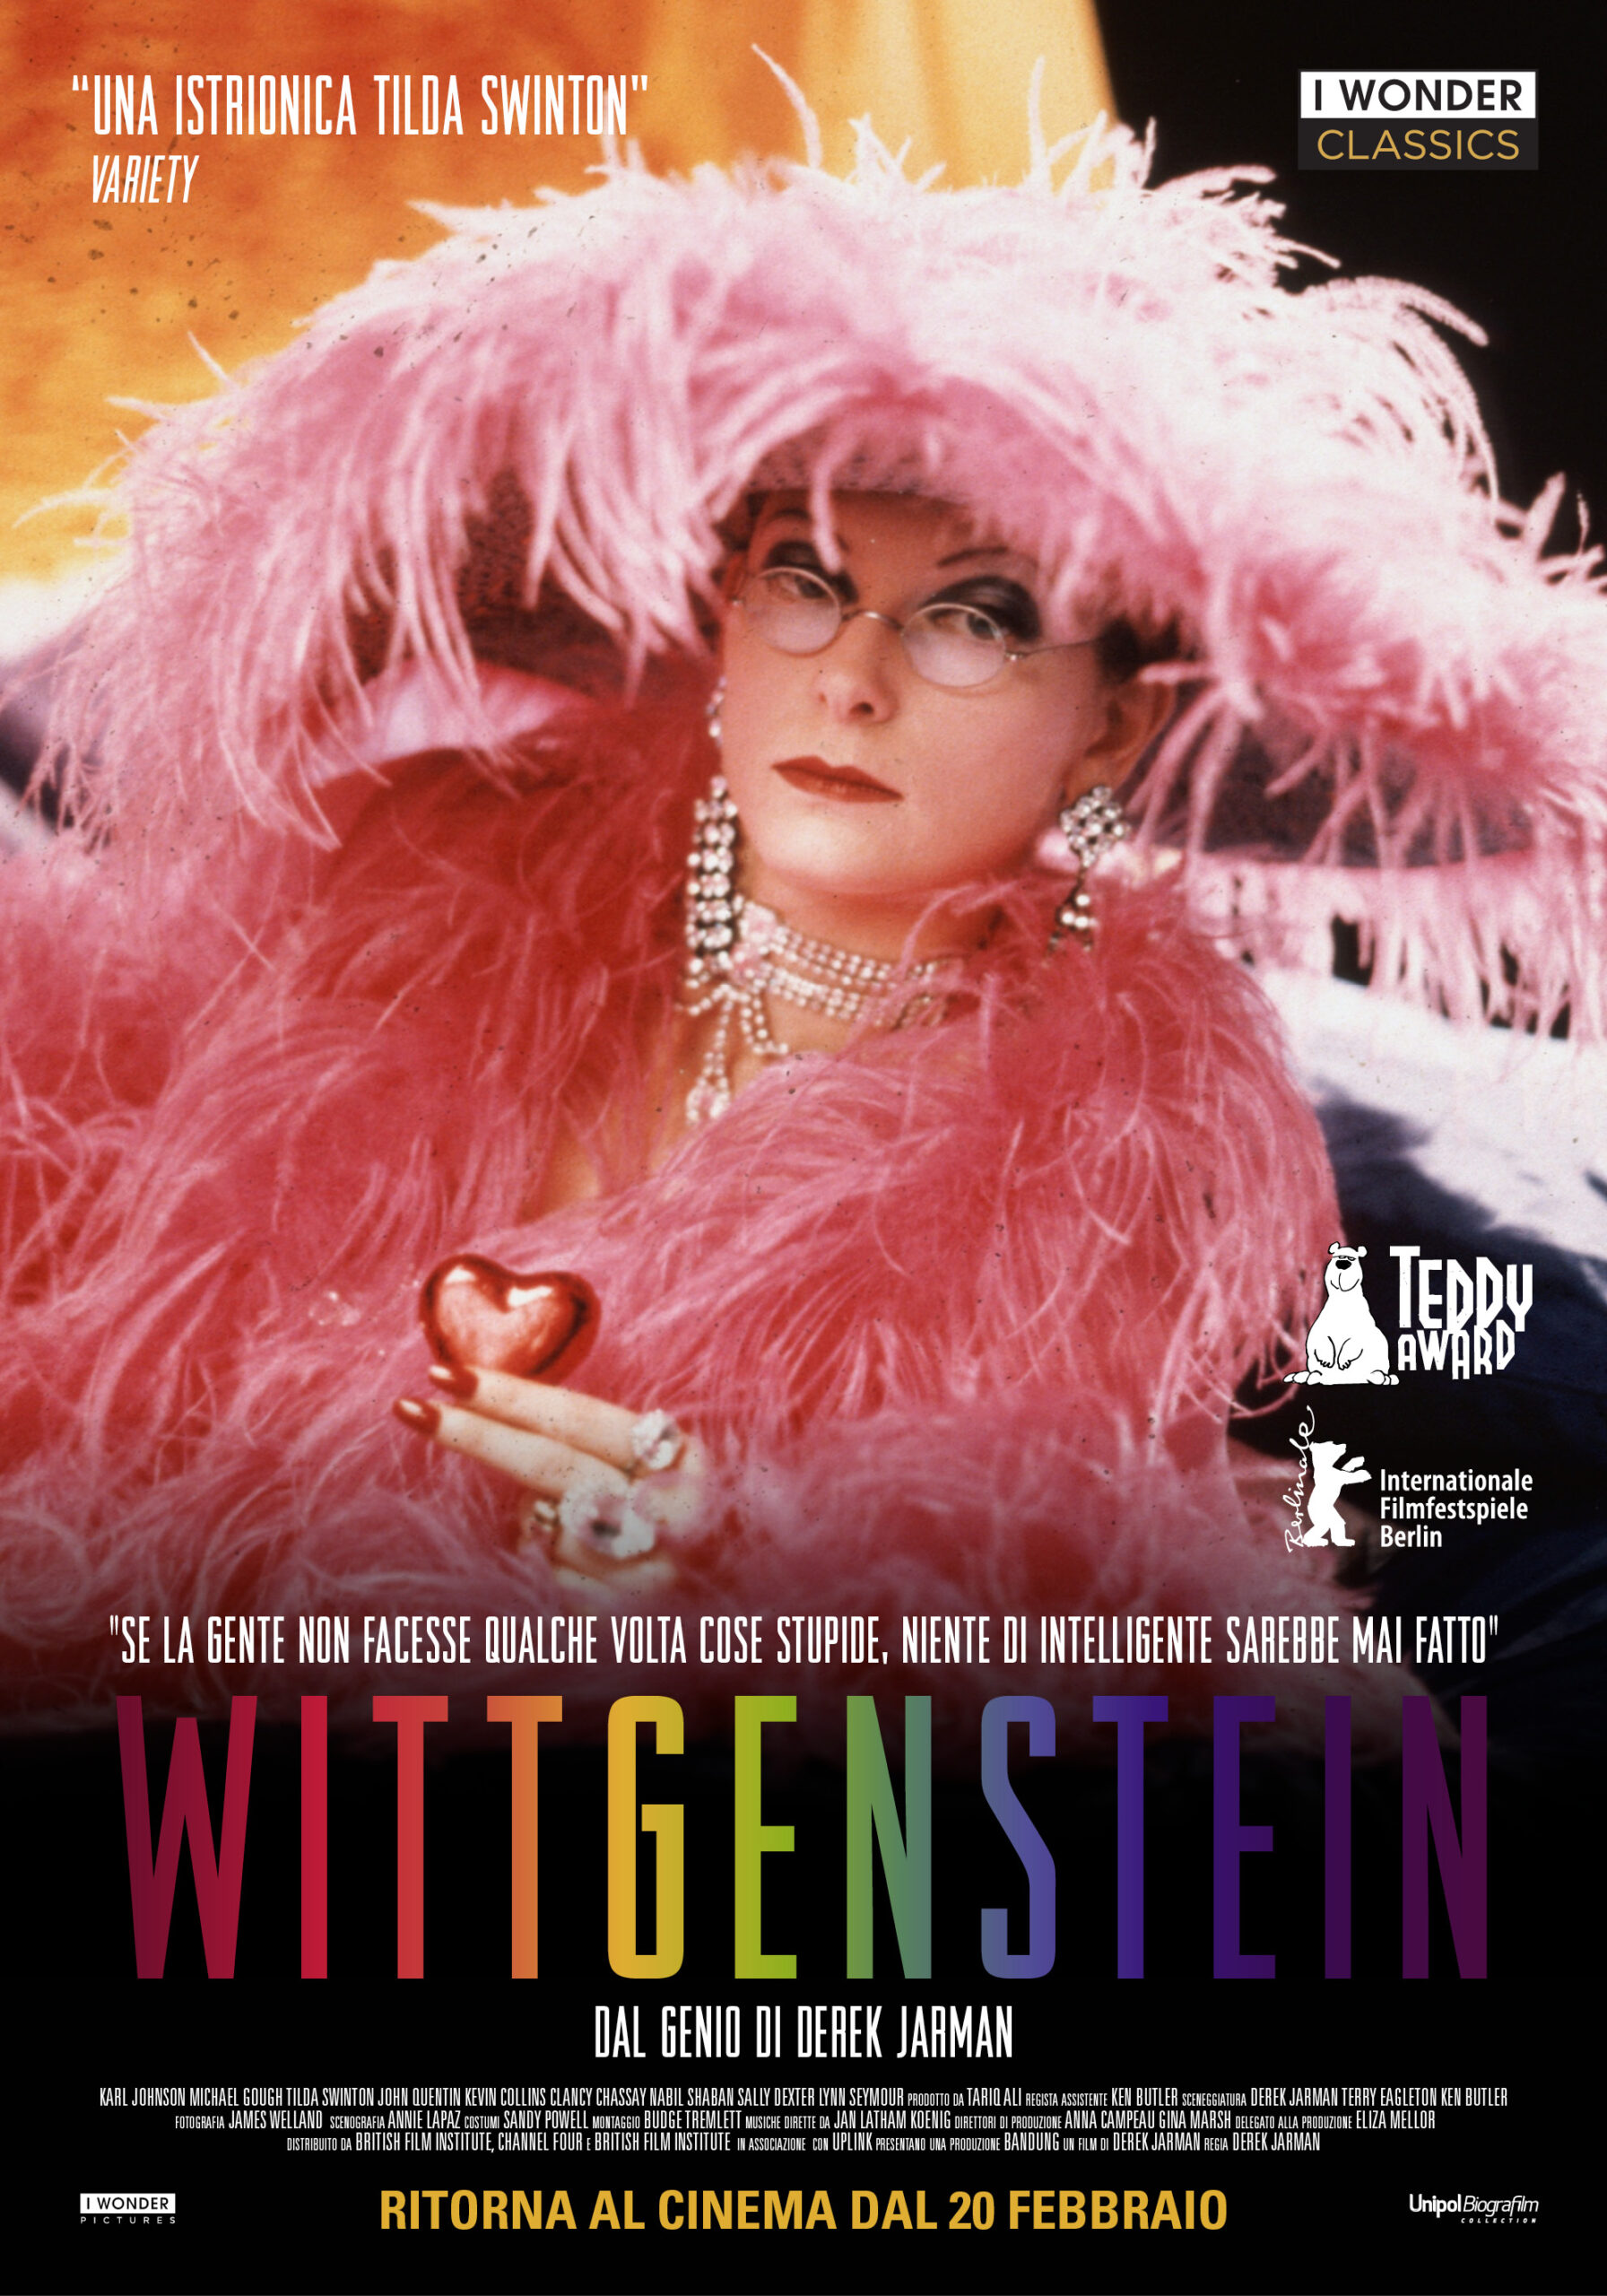 Wittgenstein con I Wonder Classics dal 20 febbraio al cinema. L'opera di Jarman ispirata al famoso filosofo